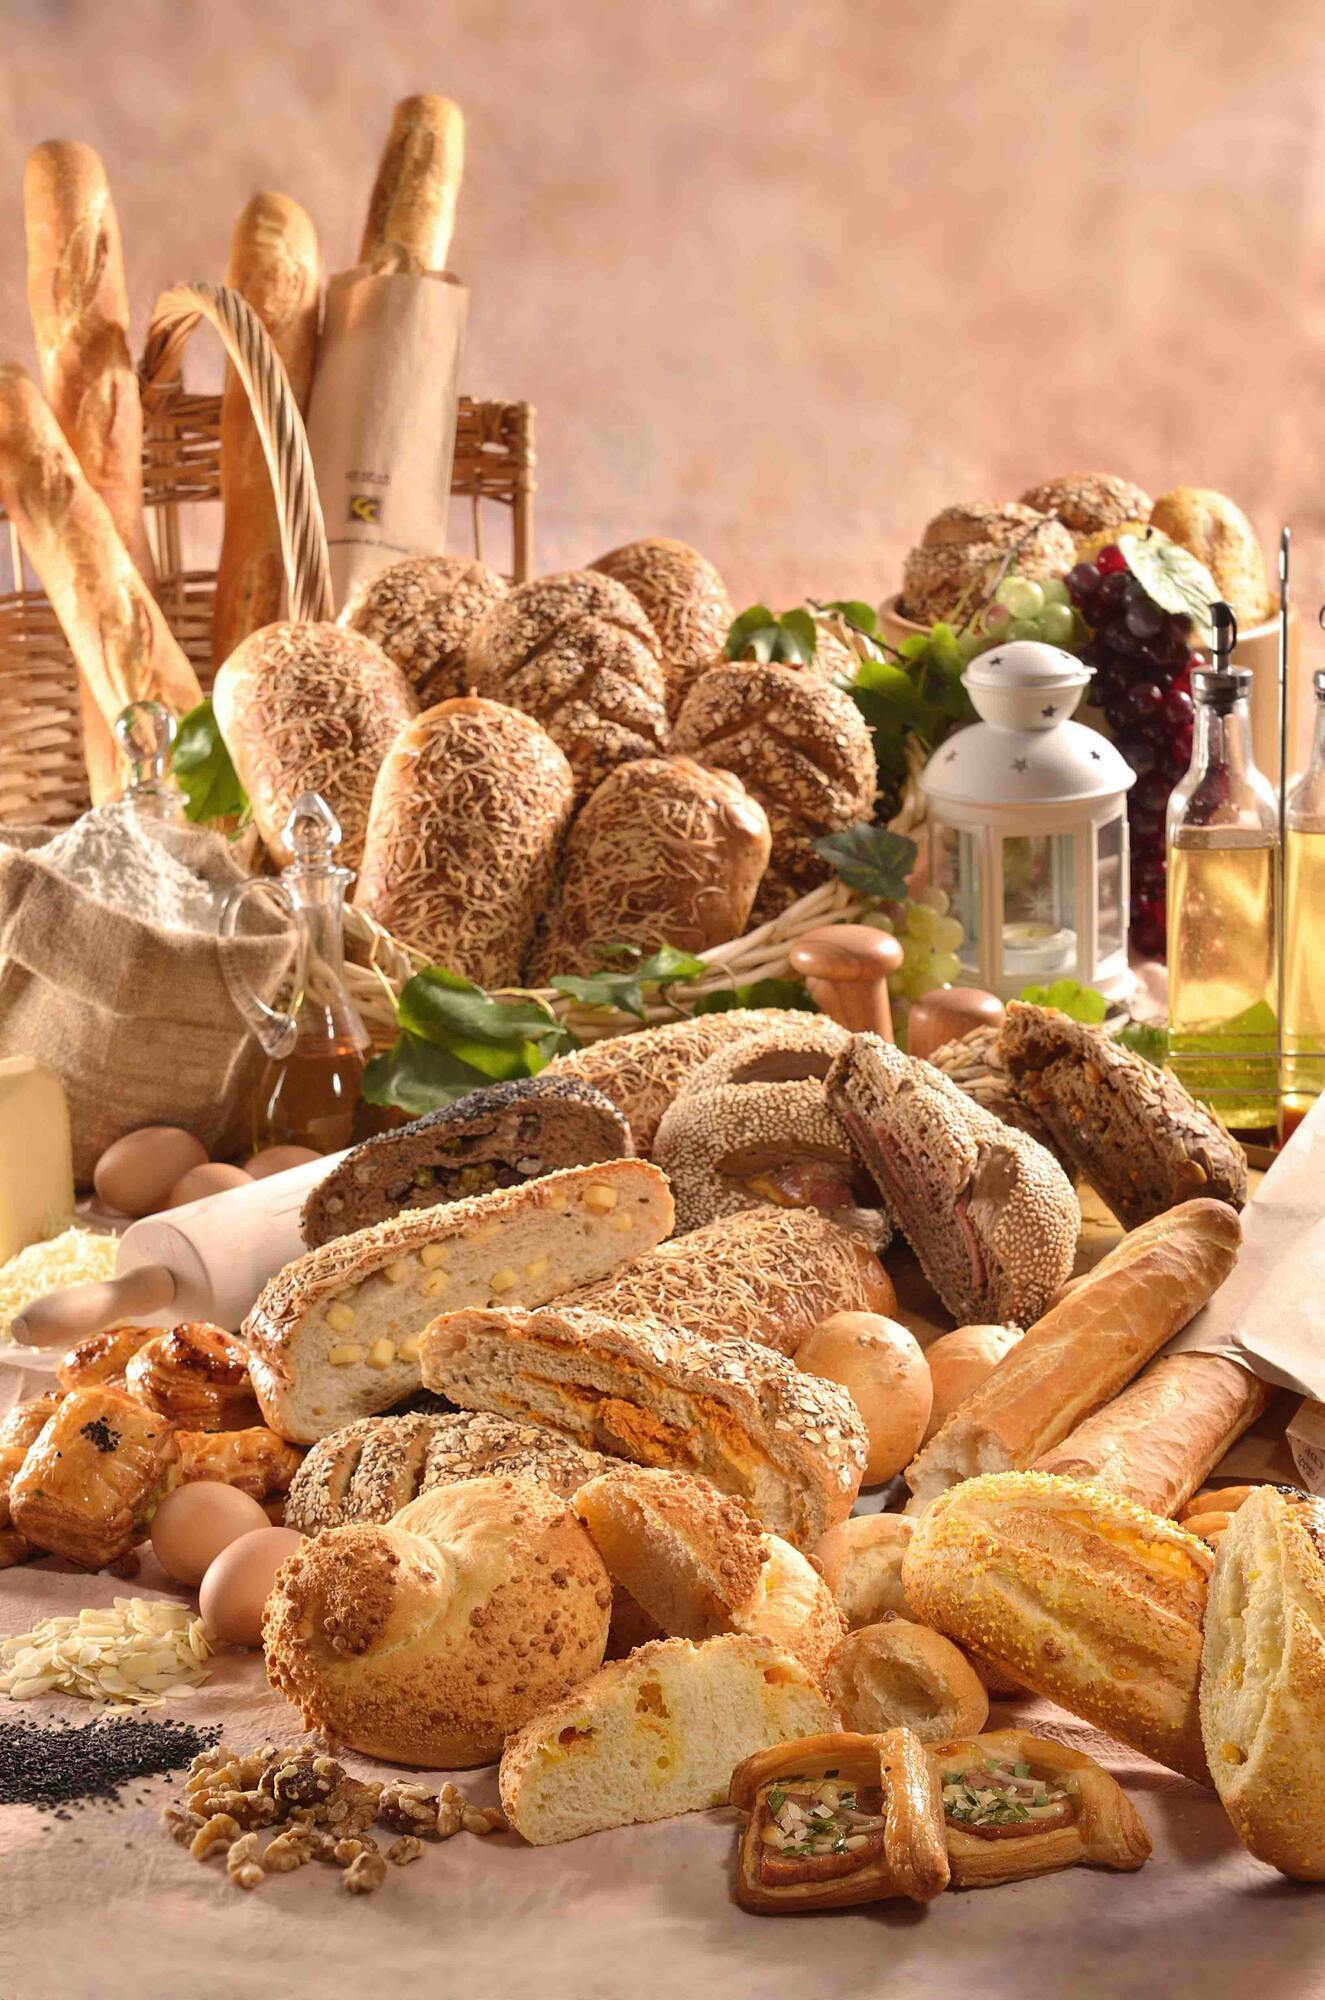 10 найкращих низькокалорійних сортів хліба за версією експертів з харчування